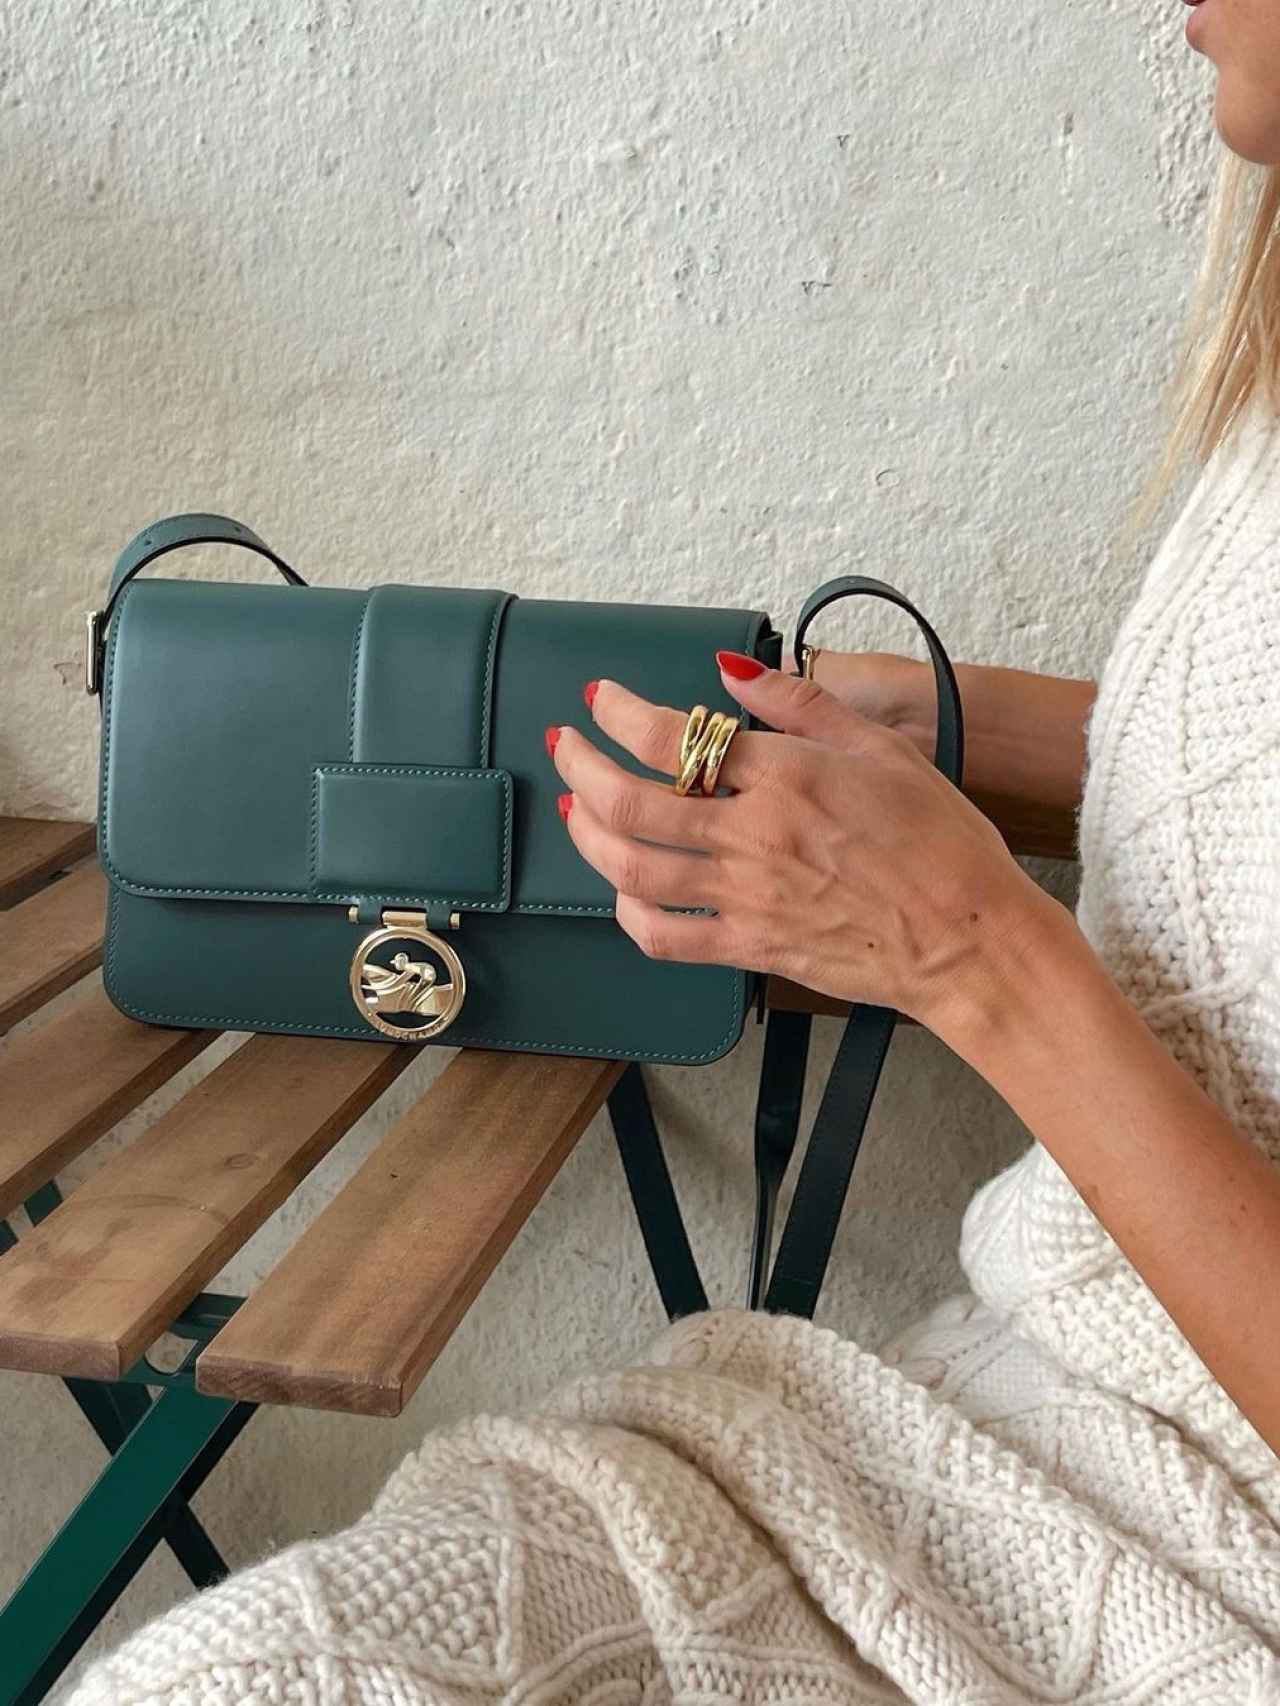 La 'influencer' muestra al detalle su nuevo bolso verde de Longchamp.